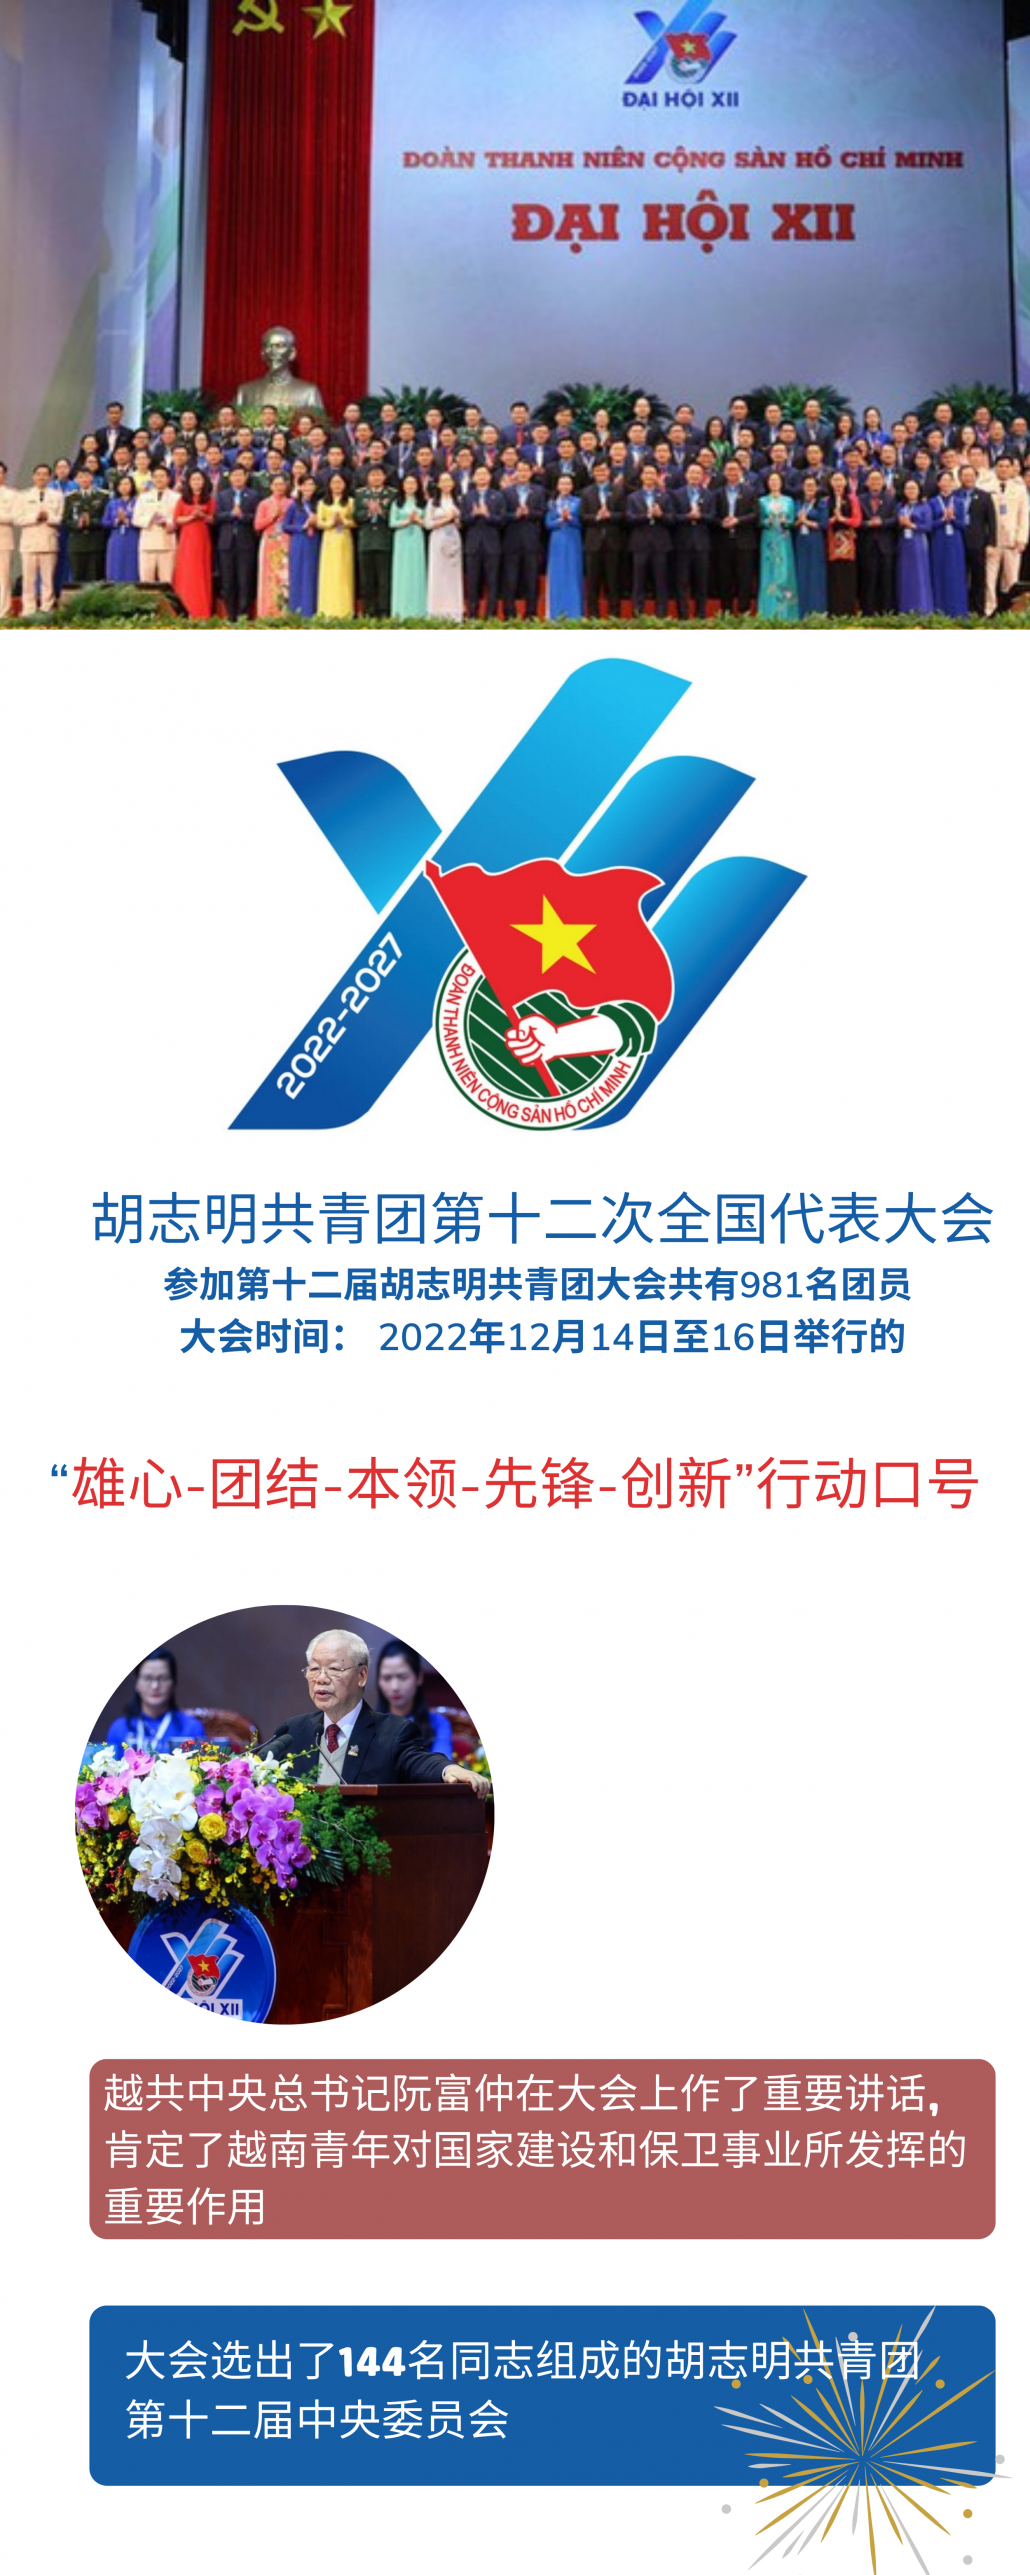 越南第12届的胡志明共青团大会:“雄心-团结-本领-先锋-创新”